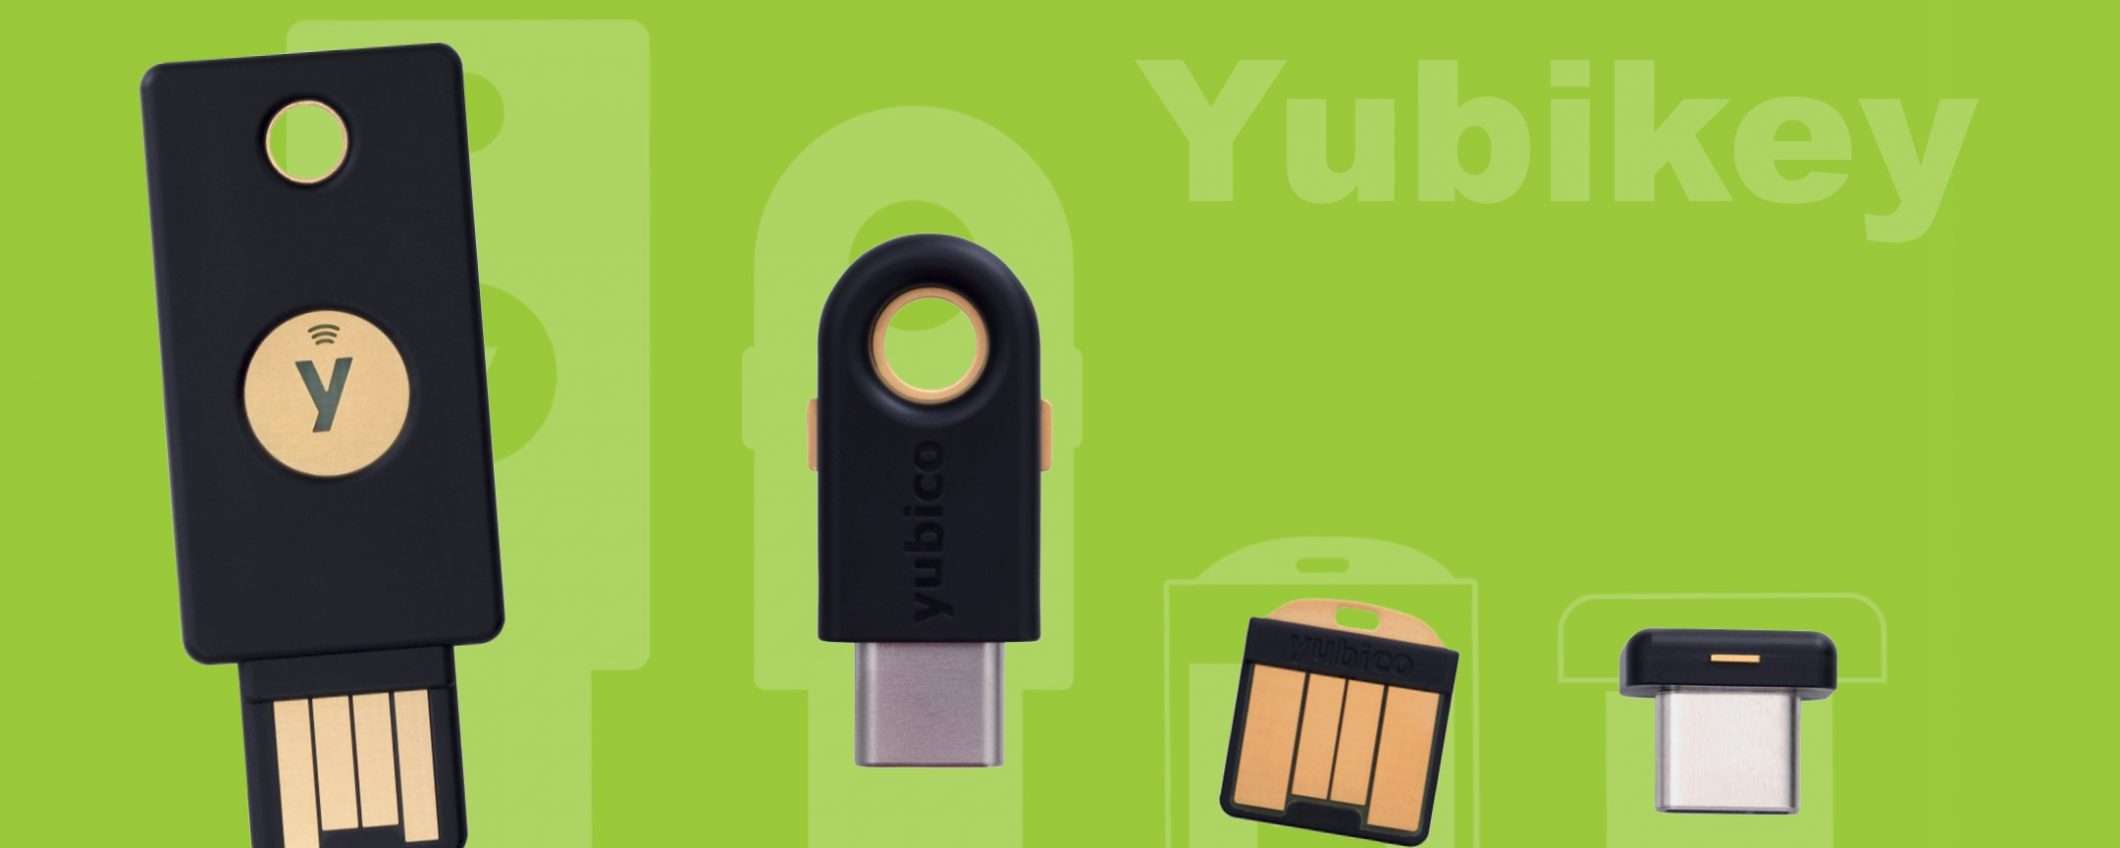 Yubico, nuove chiavi per un futuro senza password